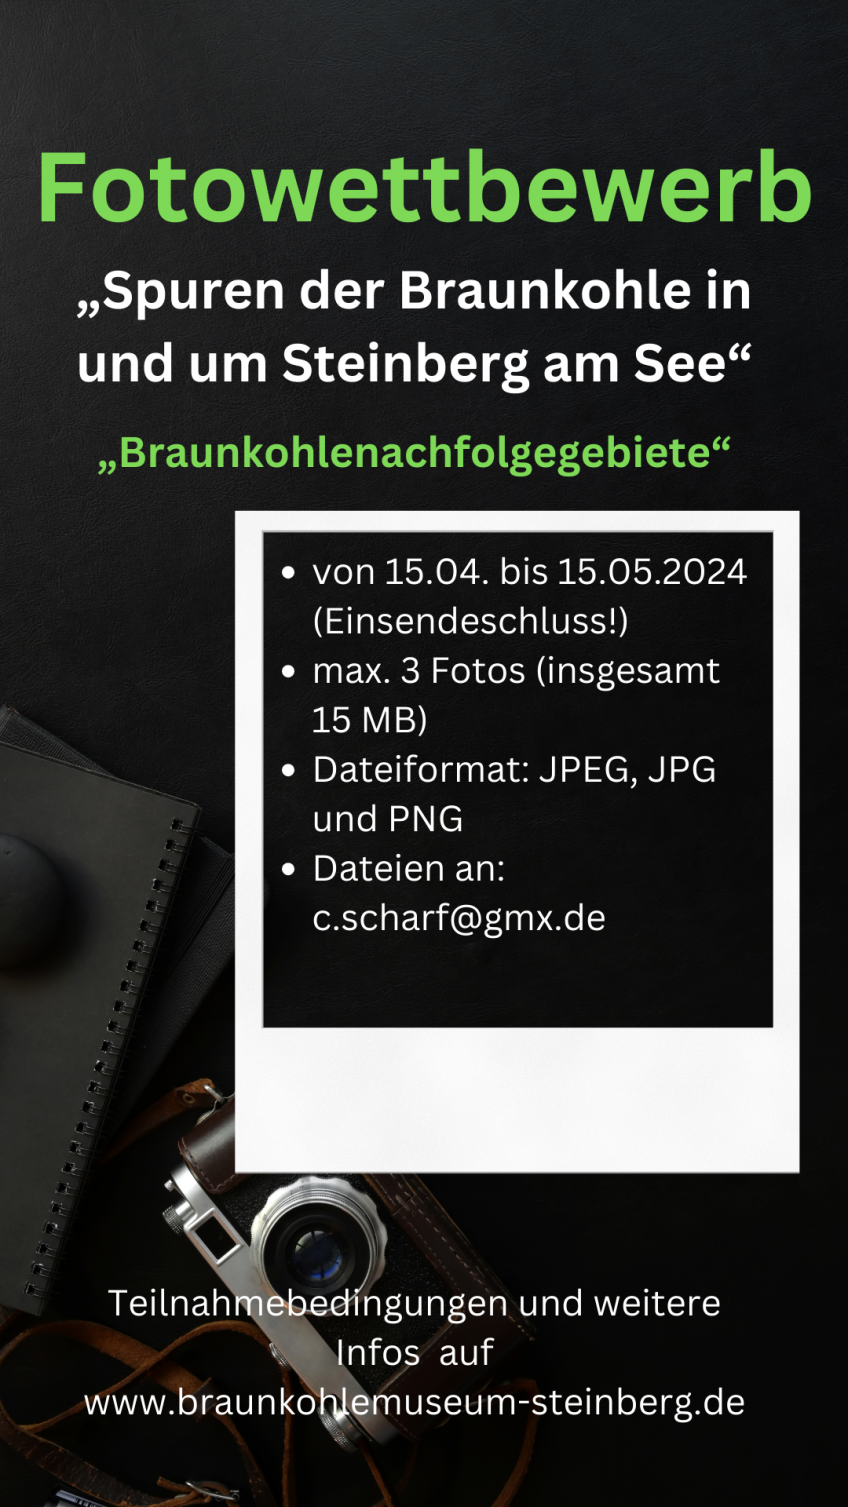 #AUFMACHER# Fotowettbewerb "„Spuren der Braunkohle in und um Steinberg am See/ Braunkohlenachfolggebiete“.